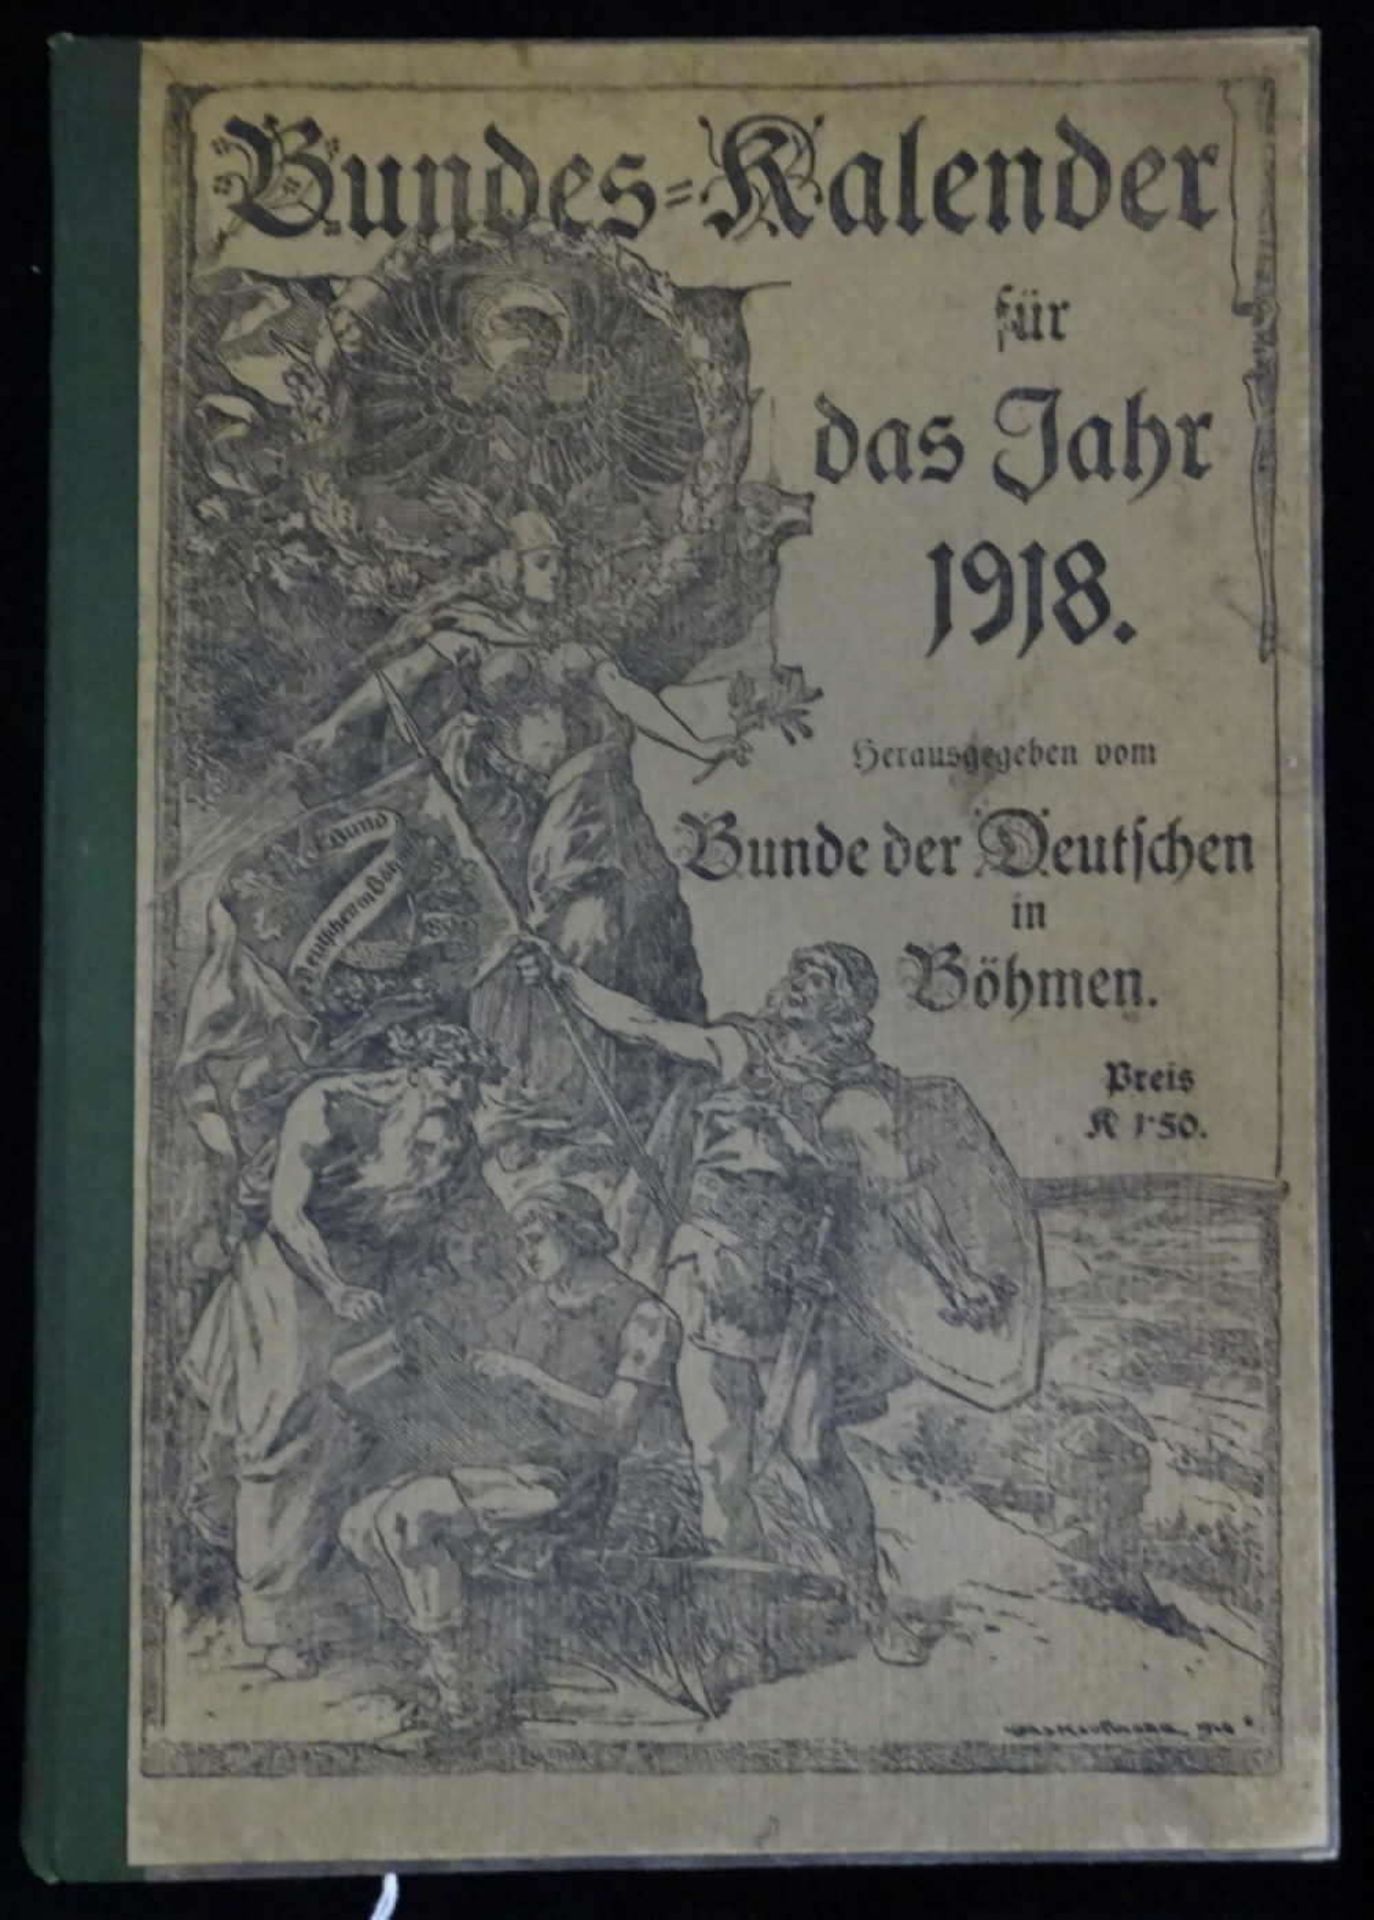 Bundes Kalender für das Jahr 1918. Herazsgegeben vom Bunde der Deutschen in Böhmen. Mit 2